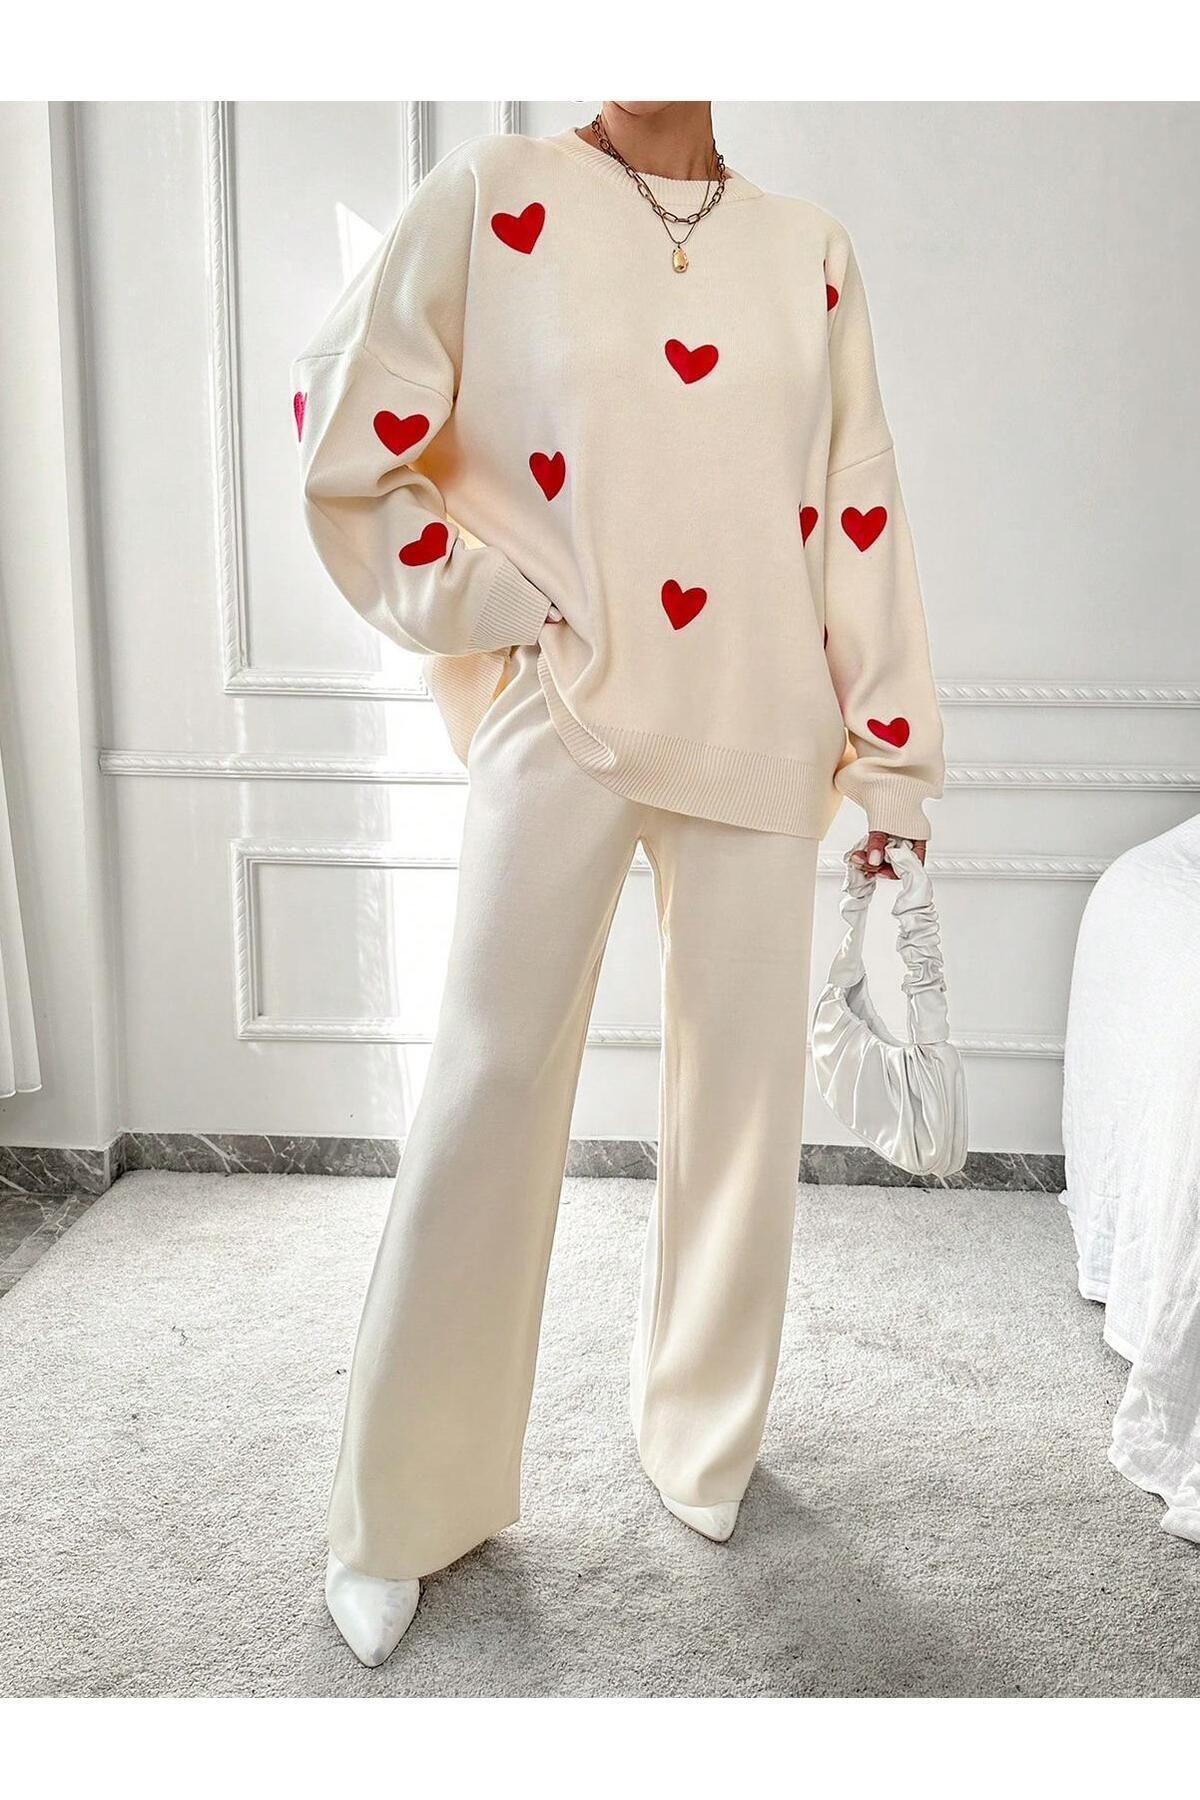 Jose Clothing Kadın Kırık Beyaz Kalp İşleme Detay Triko Kazak Pantolon İkili Takım